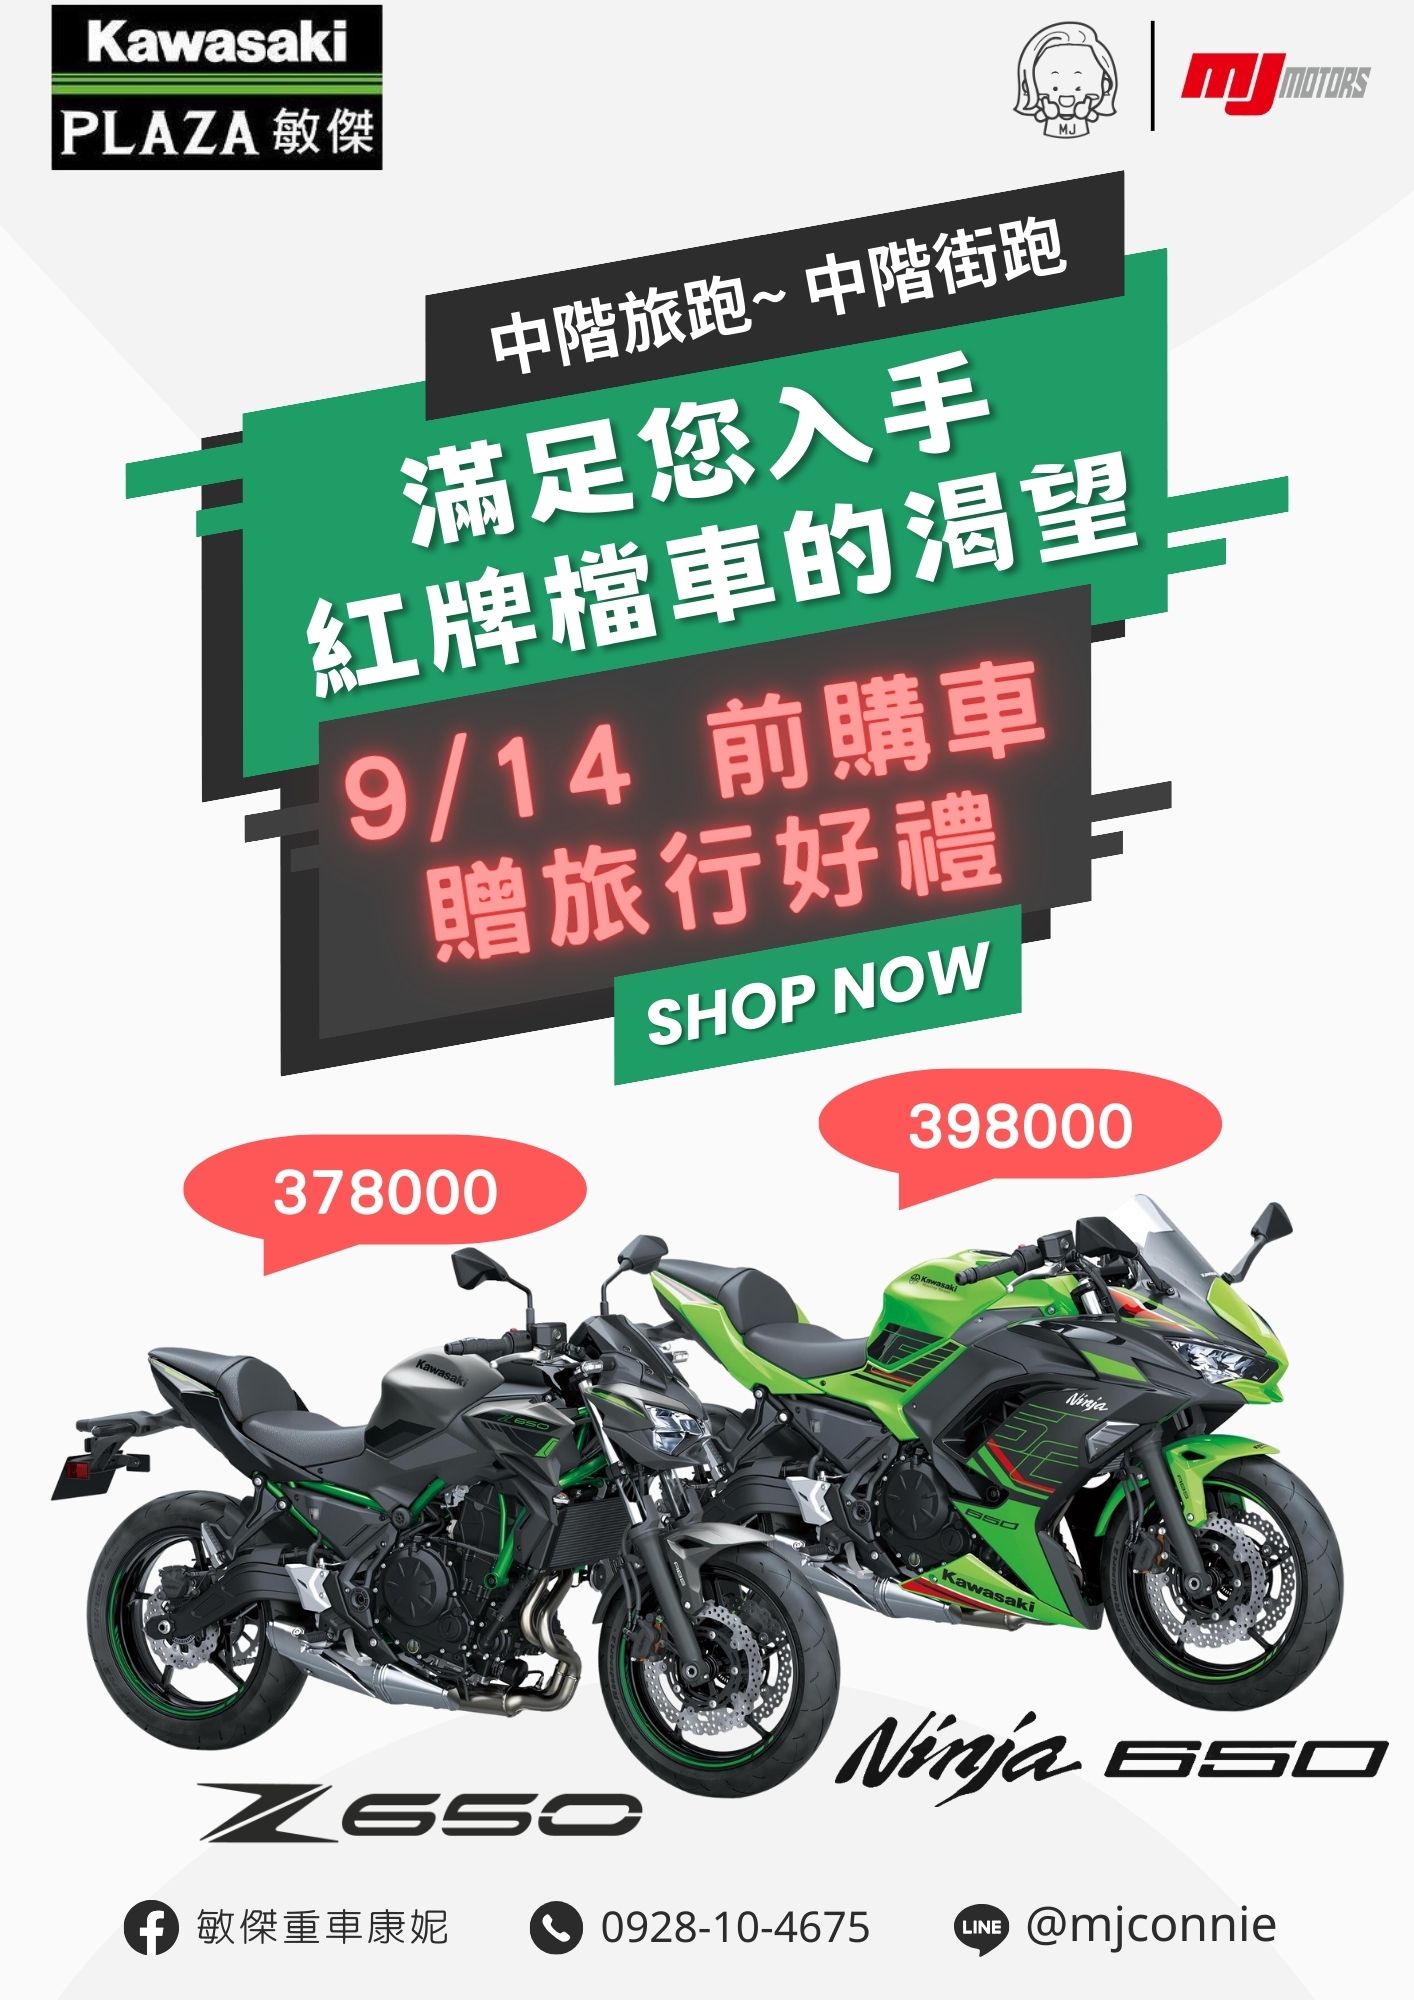 【敏傑車業資深銷售專員 康妮 Connie】KAWASAKI Z650 - 「Webike-摩托車市」 『敏傑康妮』Kawasaki Ninja650 Z650 雙缸紅牌好車 就在敏傑!! 9/14前購車 再加碼旅行必備好禮